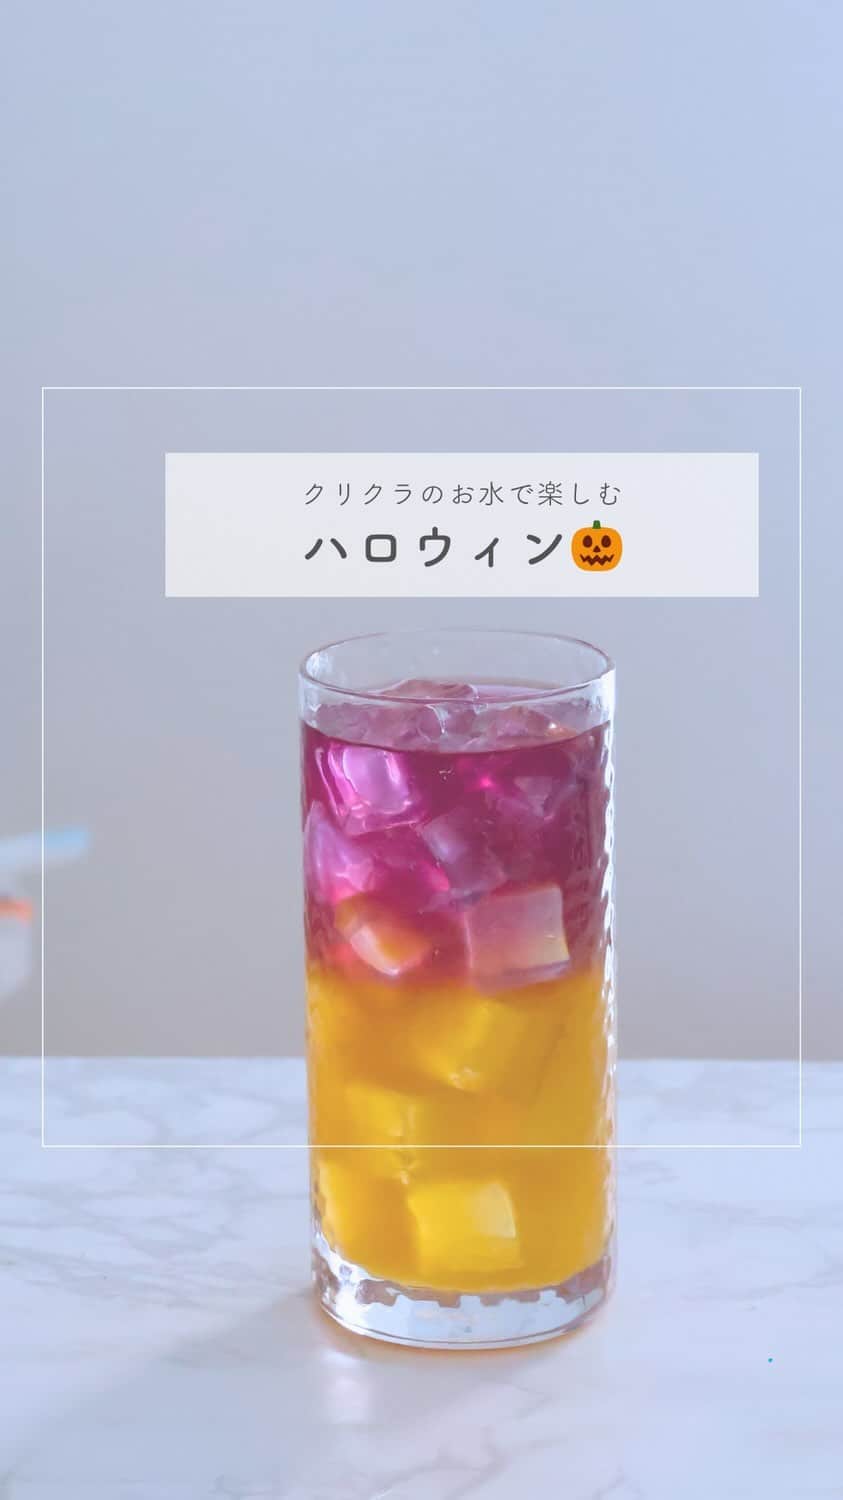 クリクラ【公式】のインスタグラム：「【ハロウィンカラードリンク😈】  飲み物だってハロウィンカラー🎃✨ 紫とオレンジでたのしくて美味しい ちょっと気分が上がるドリンクですよ🫧  美味しいクリクラ水を使って簡単アレンジで ハロウィンを彩りましょう👻🫶  𓈒 𓏸 𓐍  𓂃 𓈒𓏸 𓂃◌𓈒𓐍 𓈒𓈒 𓏸 𓐍  𓂃 𓈒𓏸 𓂃◌𓈒𓐍 𓈒 𓎩簡単ＲＥＣＩＰＥ𓎩   【ハロウィンカラードリンク😈】  𓐍材料　2杯分 ・マロウブルー　 1袋 ・クリクラ水　200ml ・レモン果汁　大さじ1くらい ・オレンジジュース　160ml ・ガムシロップ　大さじ1 ・氷　適量  𓐍作り方 ①カップにマロウブルーとクリクラ水(湯)を入れてて、2分ほど置く。  ②ティーバッグと取り除き、レモン果汁を加えて混ぜる。(赤っぽい色から紫に変える)  ③オレンジジュースにガムシロップを加える。 　(大さじ1の砂糖と水を混ぜて作る事も可能)  ④グラスに氷を入れ、③を入れ、氷に沿ってゆっくり②を注ぐ。  氷がないと混ざってしまうので、必ず氷は使ってください。  𓈒 𓏸 𓐍  𓂃 𓈒𓏸 𓂃◌𓈒𓐍 𓈒𓈒 𓏸 𓐍  𓂃 𓈒𓏸 𓂃◌𓈒𓐍 𓈒 「安心・安全なお水」をお届けするクリクラ🫧 @crecla.official 𓈒 𓏸 𓐍  𓂃 𓈒𓏸 𓂃◌𓈒𓐍 𓈒𓈒 𓏸 𓐍  𓂃 𓈒𓏸 𓂃◌𓈒𓐍 𓈒  #クリクラ#ウォーターサーバー #ウォーターサーバーのある生活　#ウォーターサーバーのある暮らし#ウォーターサーバー検討中#ウォーターサーバーデビュー#ウォーターサーバーのある風景 #水を飲む #RO水#水 #時短レシピ #簡単レシピ #節約レシピ　#おうちカフェ#簡単料理　#料理好きと繋がりたい　#料理初心者#料理好き #モクテル  #おうちカフェ#簡単ドリンク #ツートンカラードリンク #料理好きな人と繋がりたい #てづくりごはん365 #ハロウィン #ハロウィンドリンク #ドリンク作り」